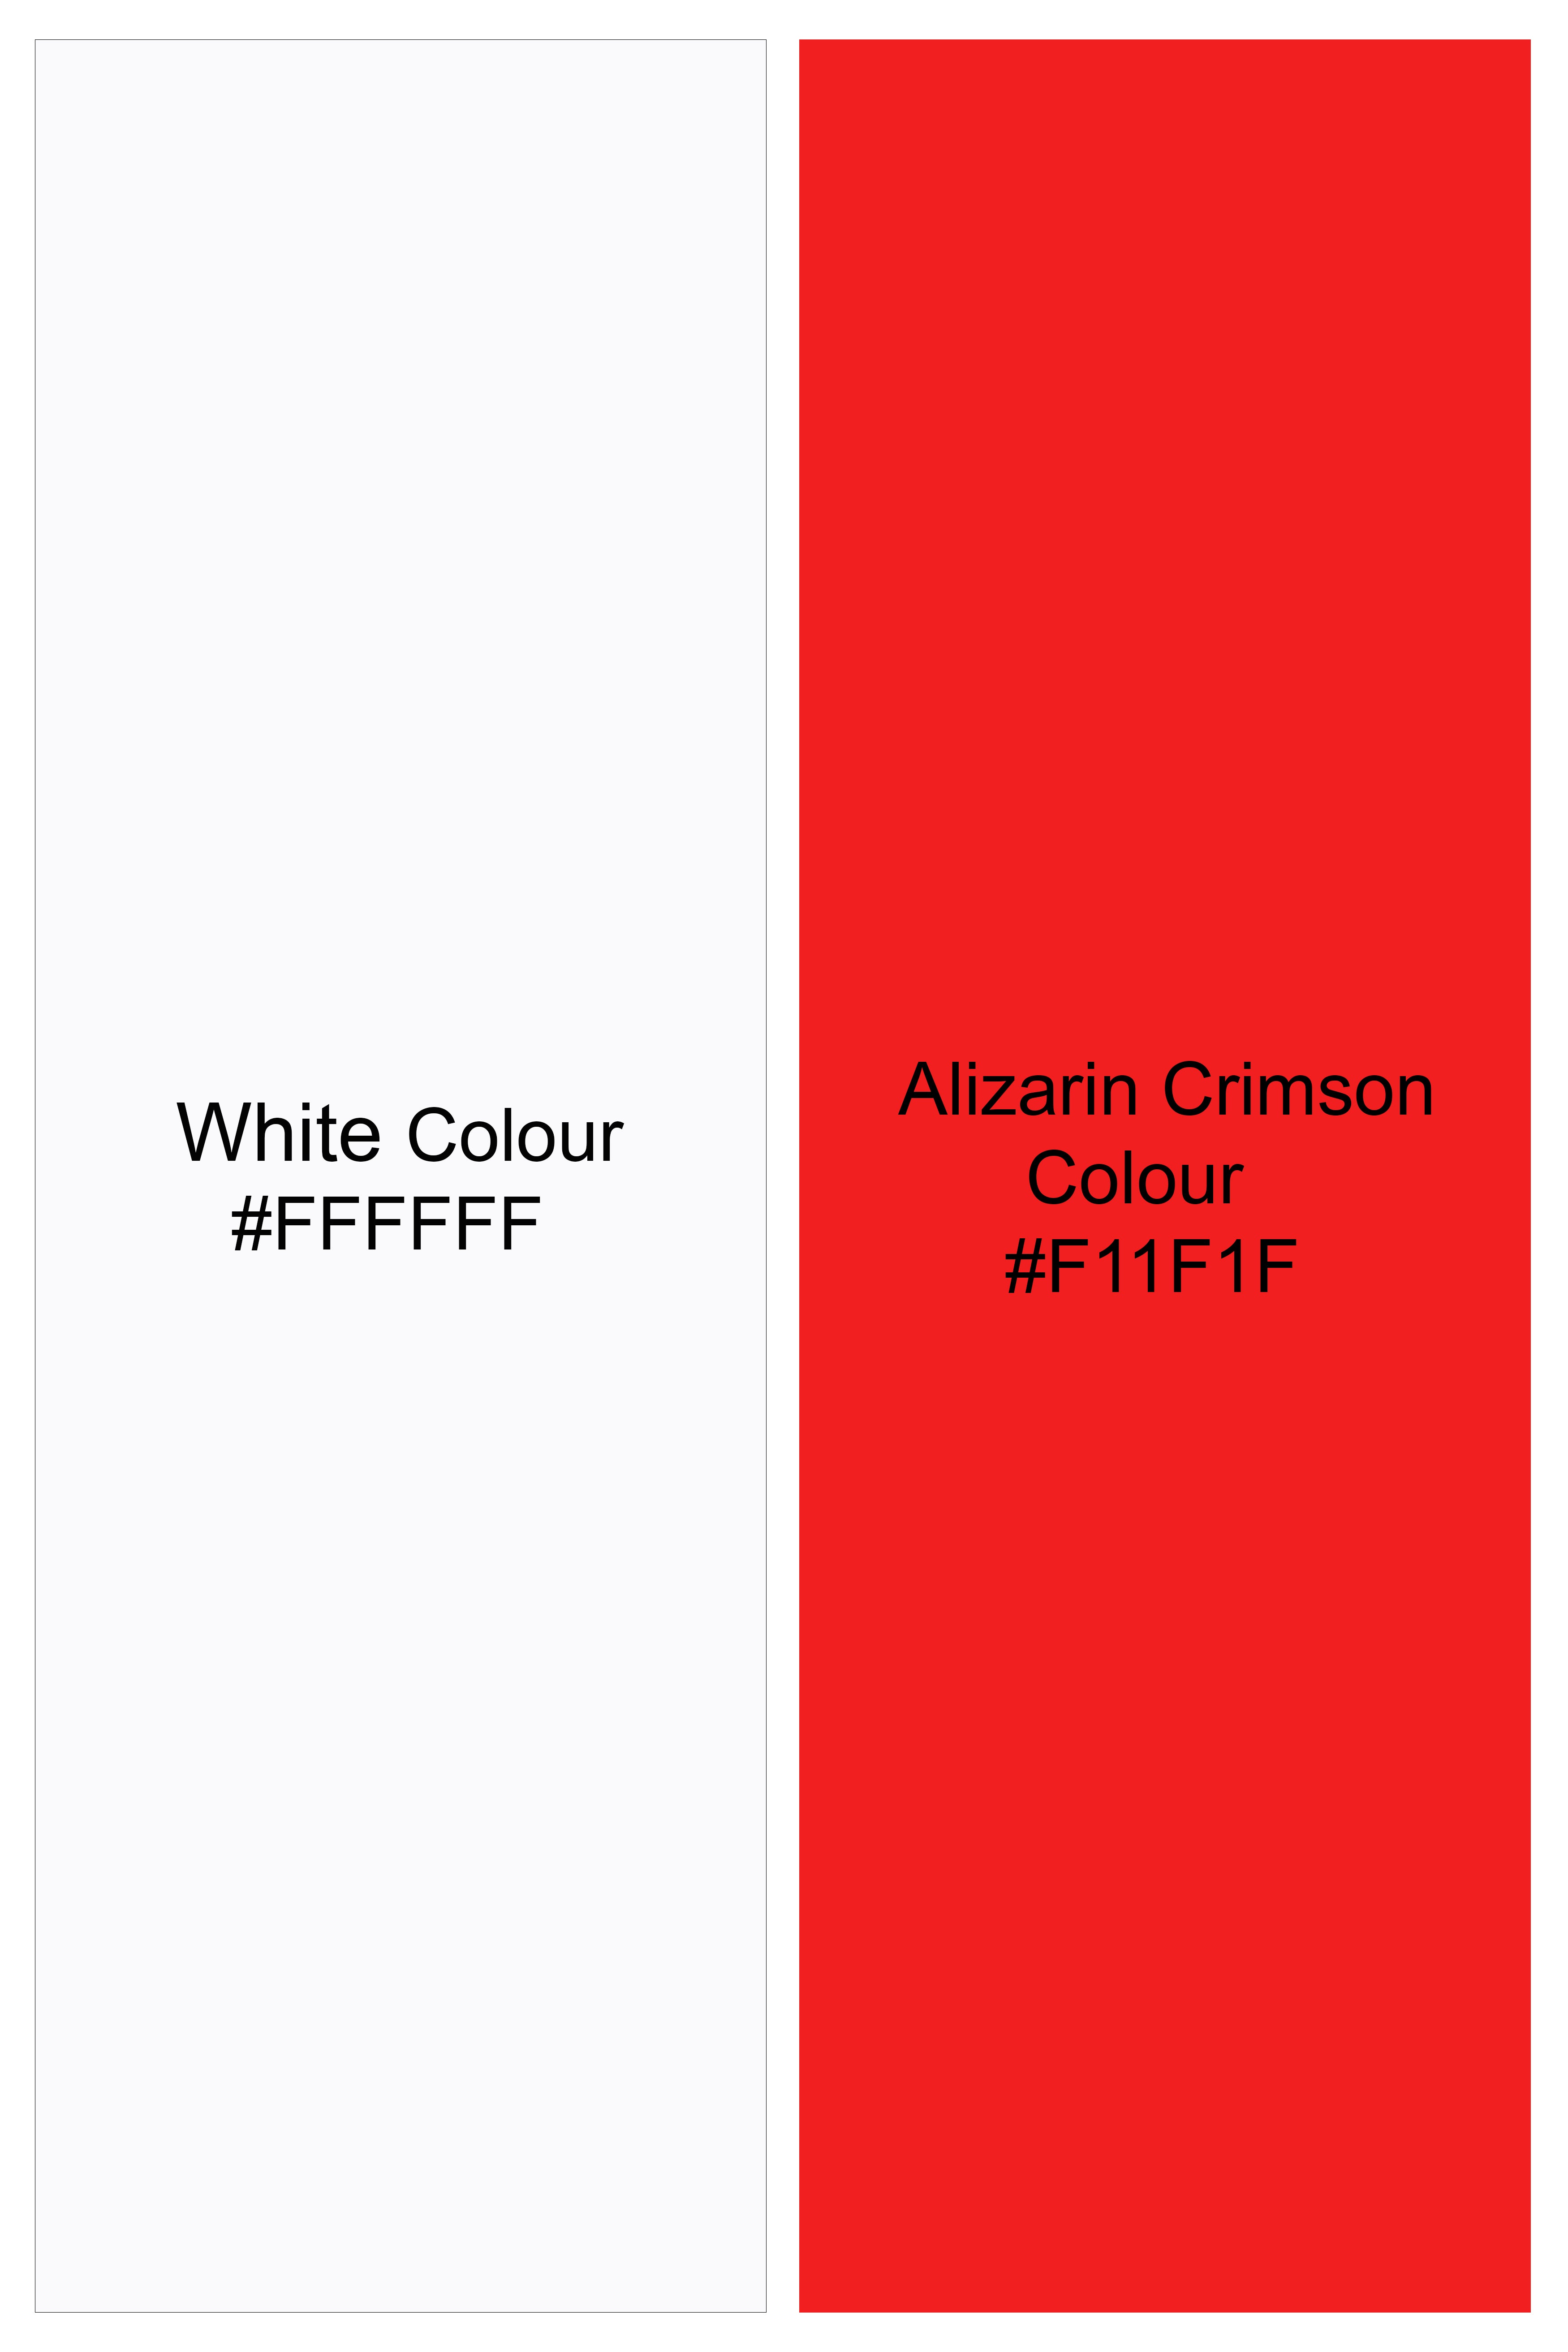 Bright White and Alizarin Crimson Red Stripes Premium Cotton Short